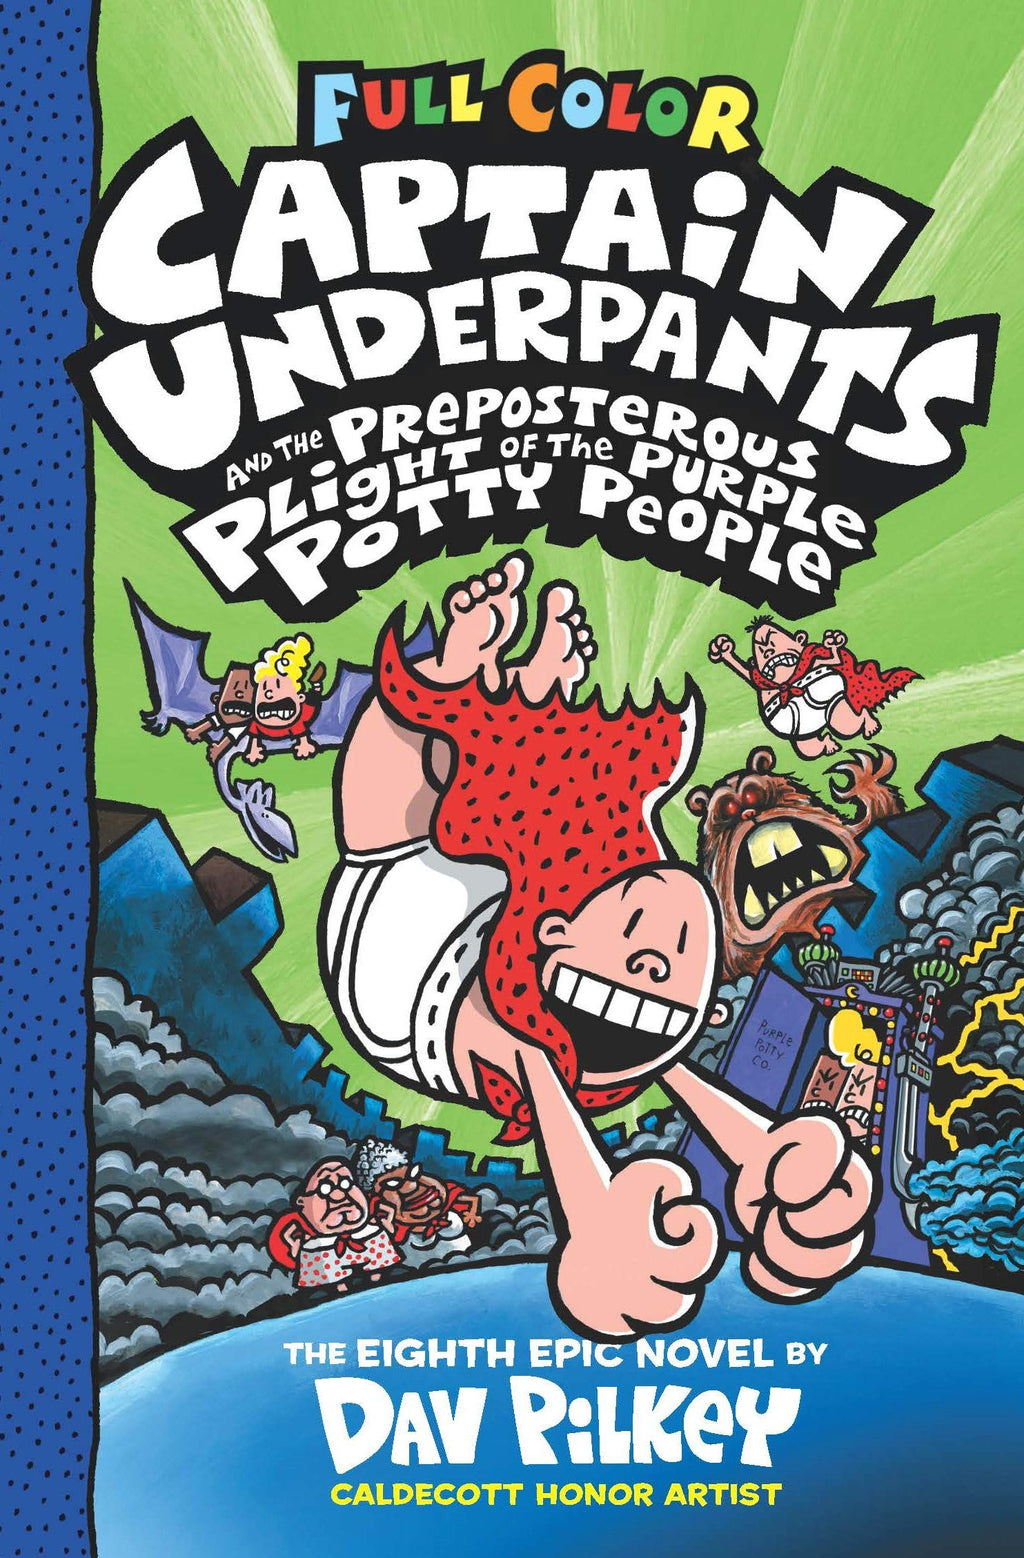 The Adventures of Captain Underpants 1 - Dav Pilkey (Hebrew